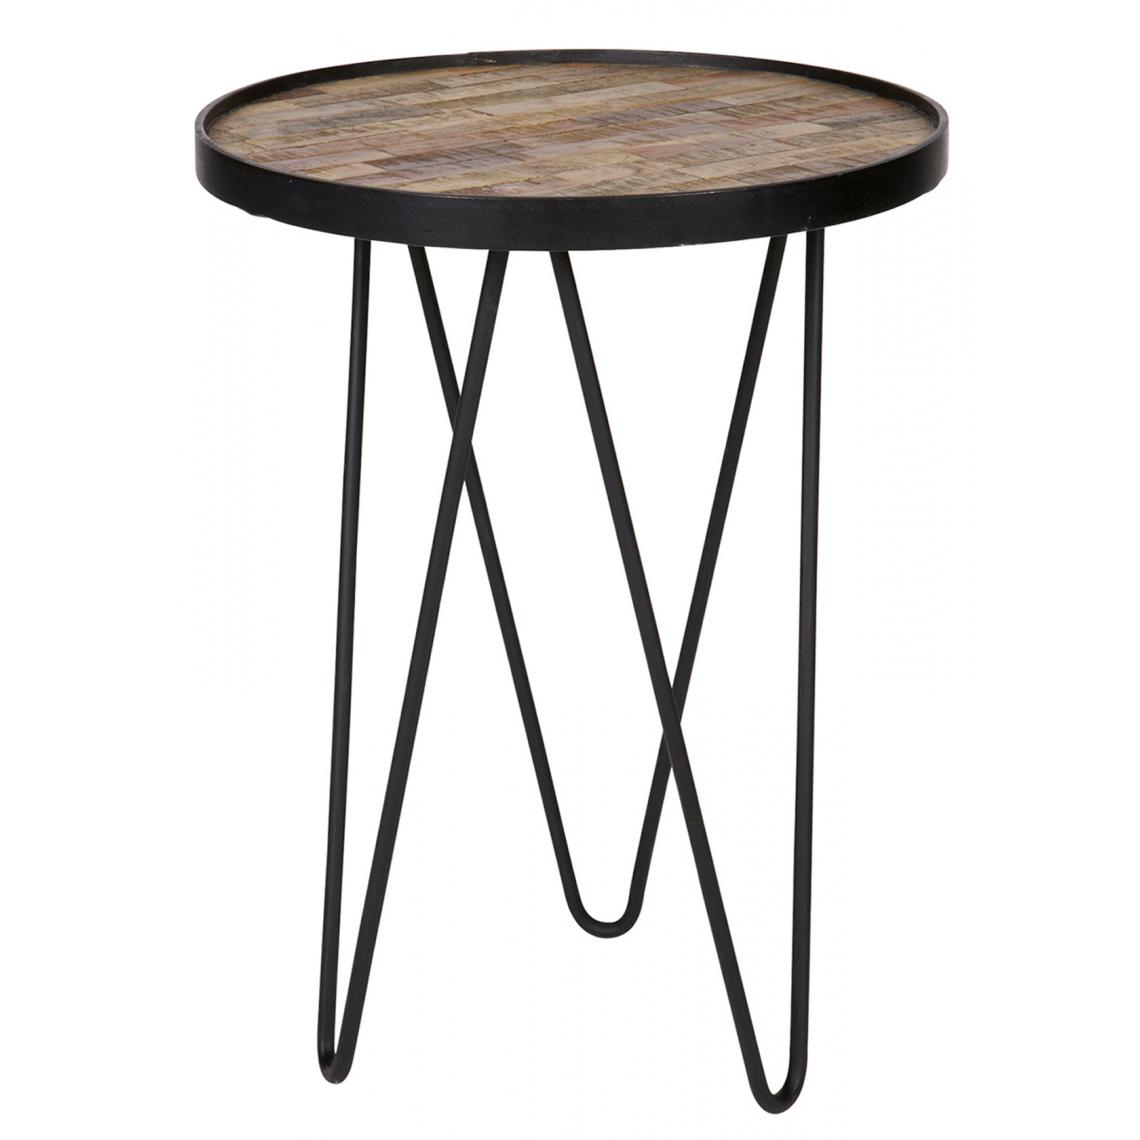 Pegane - Table haute en bois et métal, finition naturel - Dim : H 52 x dia 39 cm - Tables à manger